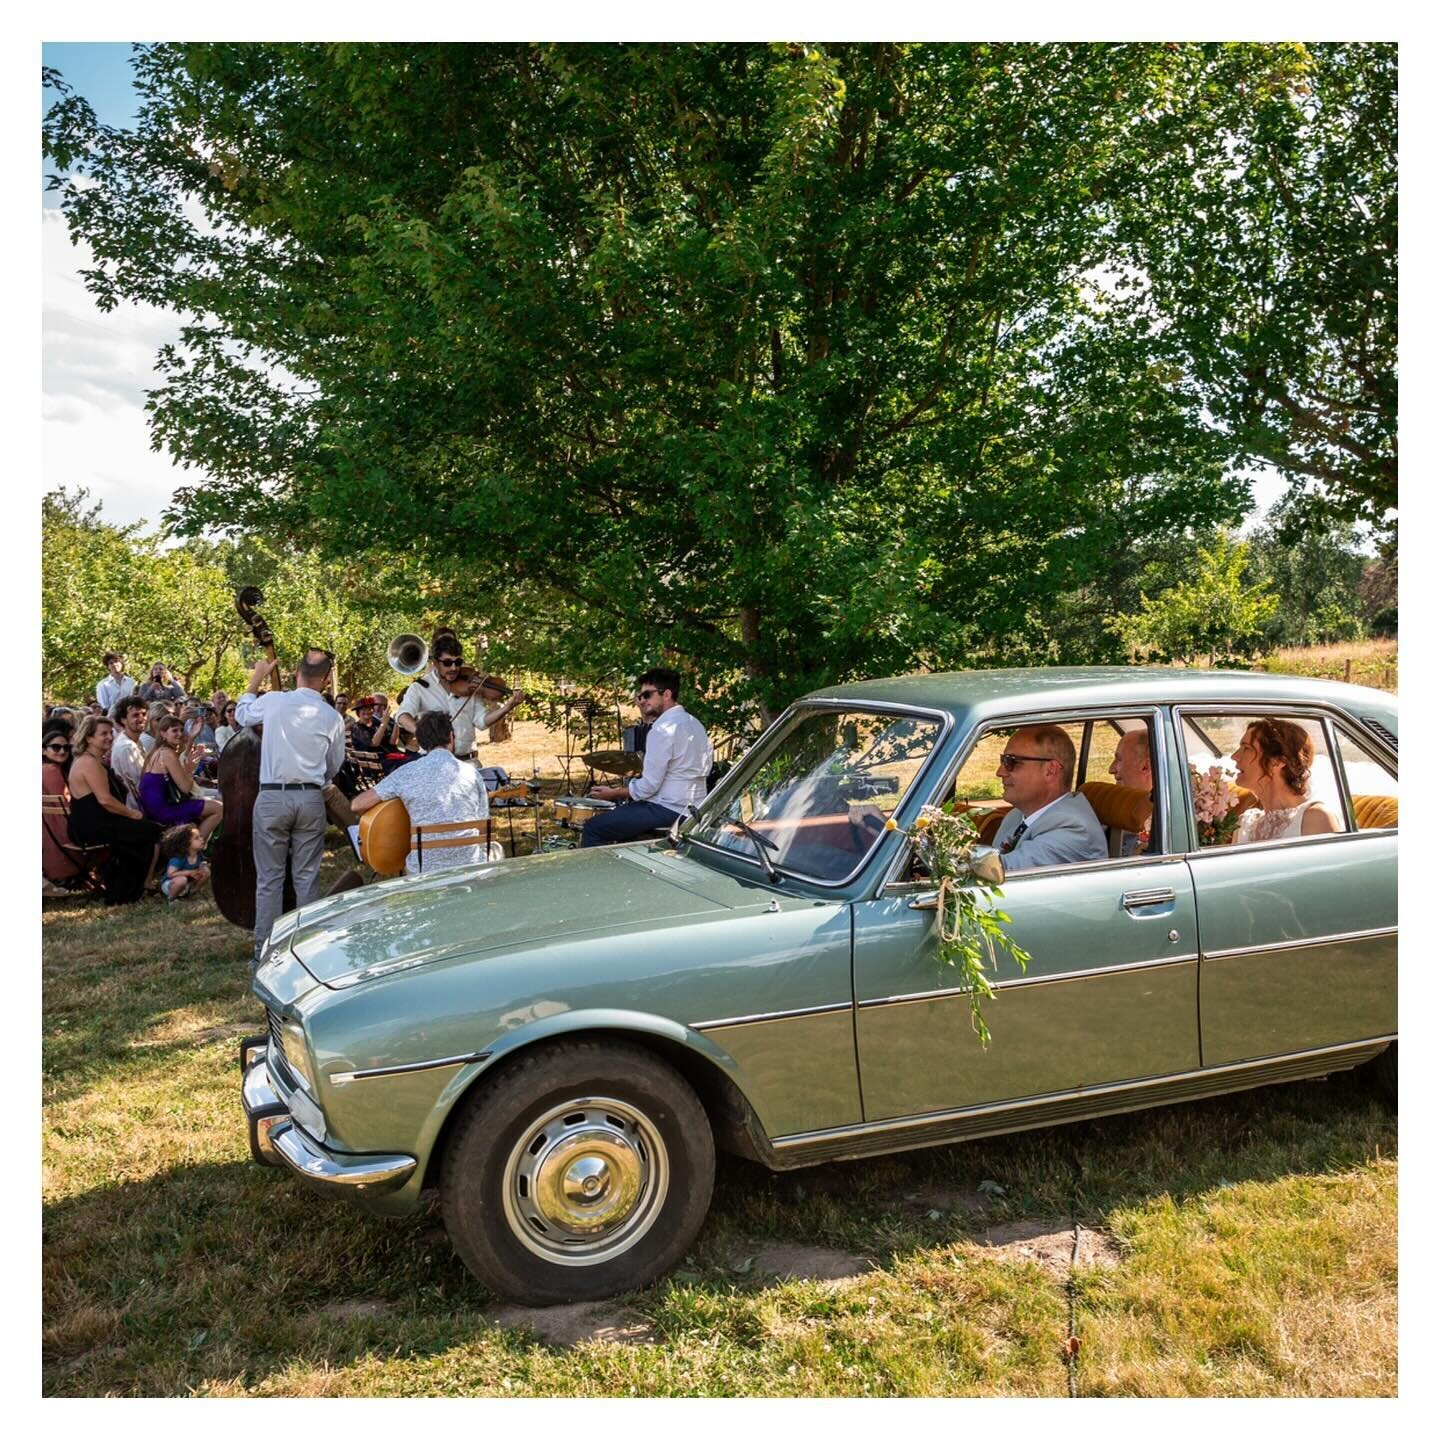 { Real wedding by Noor } L&rsquo;entr&eacute;e de M&amp;P dans cette belle Peugeot vintage pour leur c&eacute;r&eacute;monie la&iuml;que 🌱
.
.
📷 : @loicbourniquelphoto 
.
.
#ceremonielaique #entr&eacute;edesmari&eacute;s #voiturevintage #voituredec